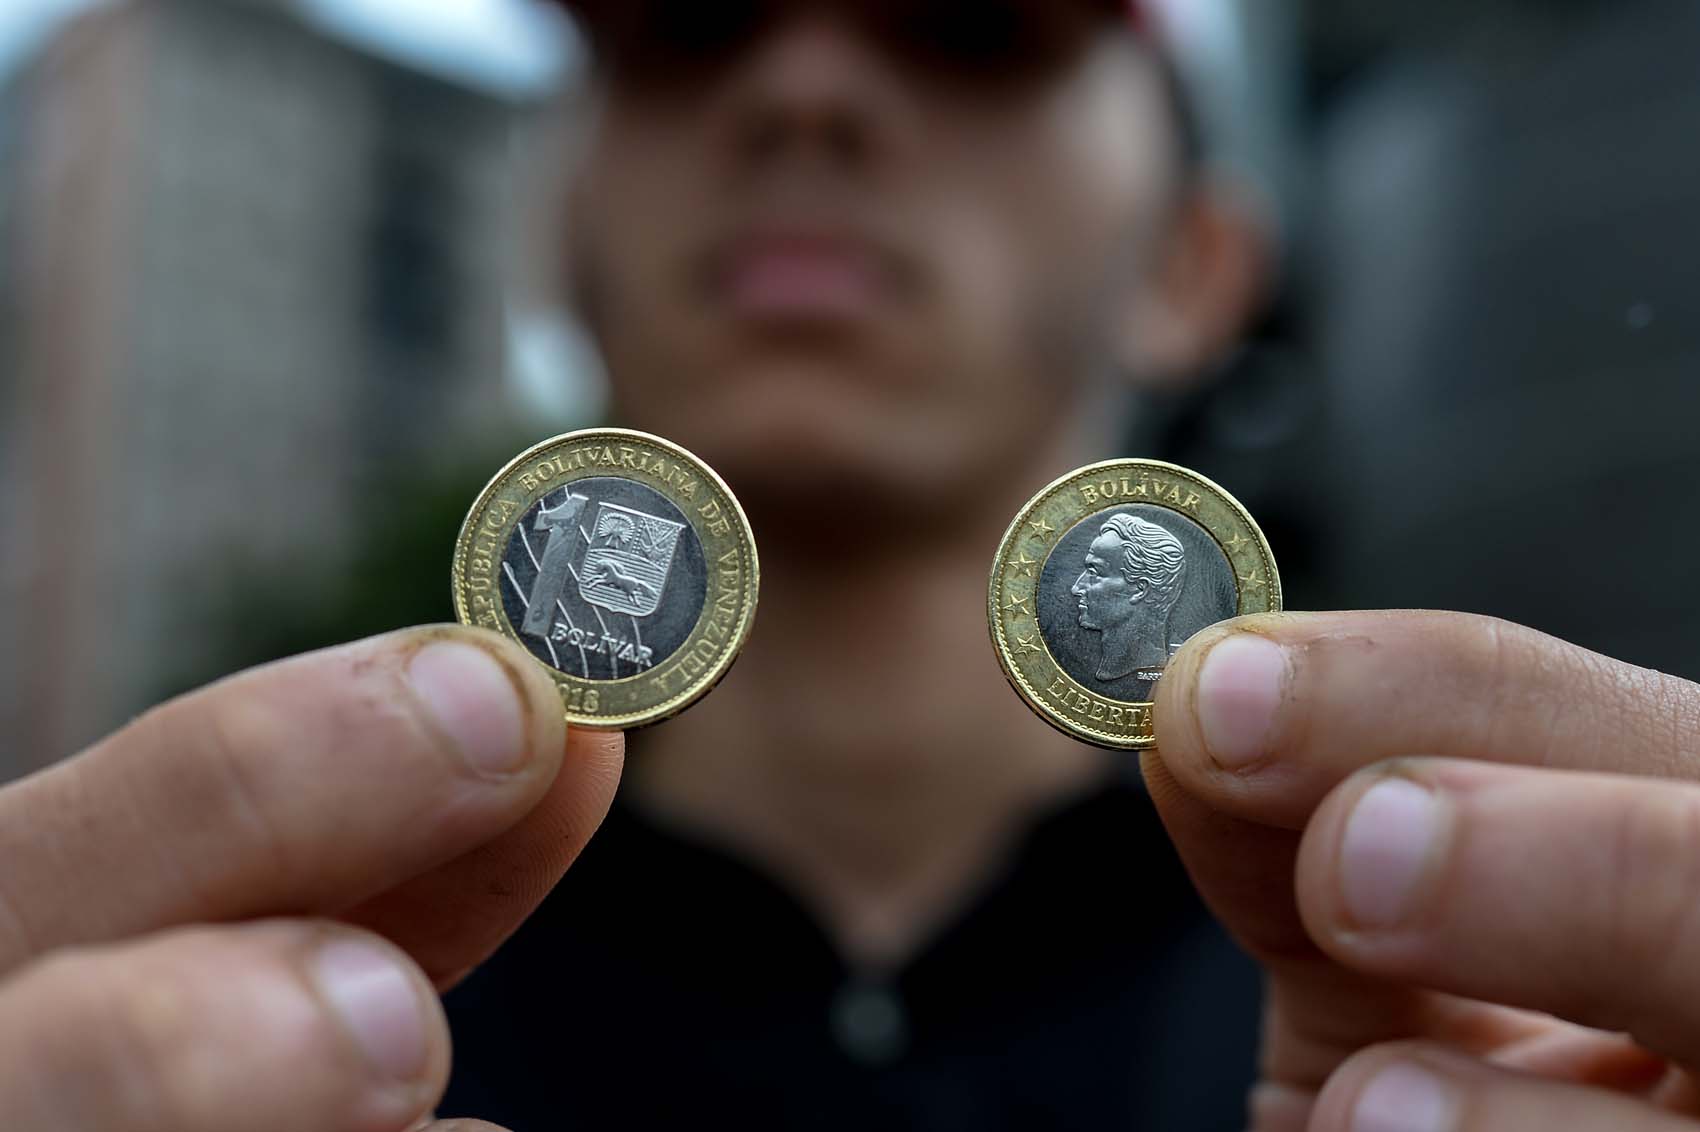 Coge dato… Las diferencias entre las monedas de Bs.1 Soberano y Bs.1 Fuerte